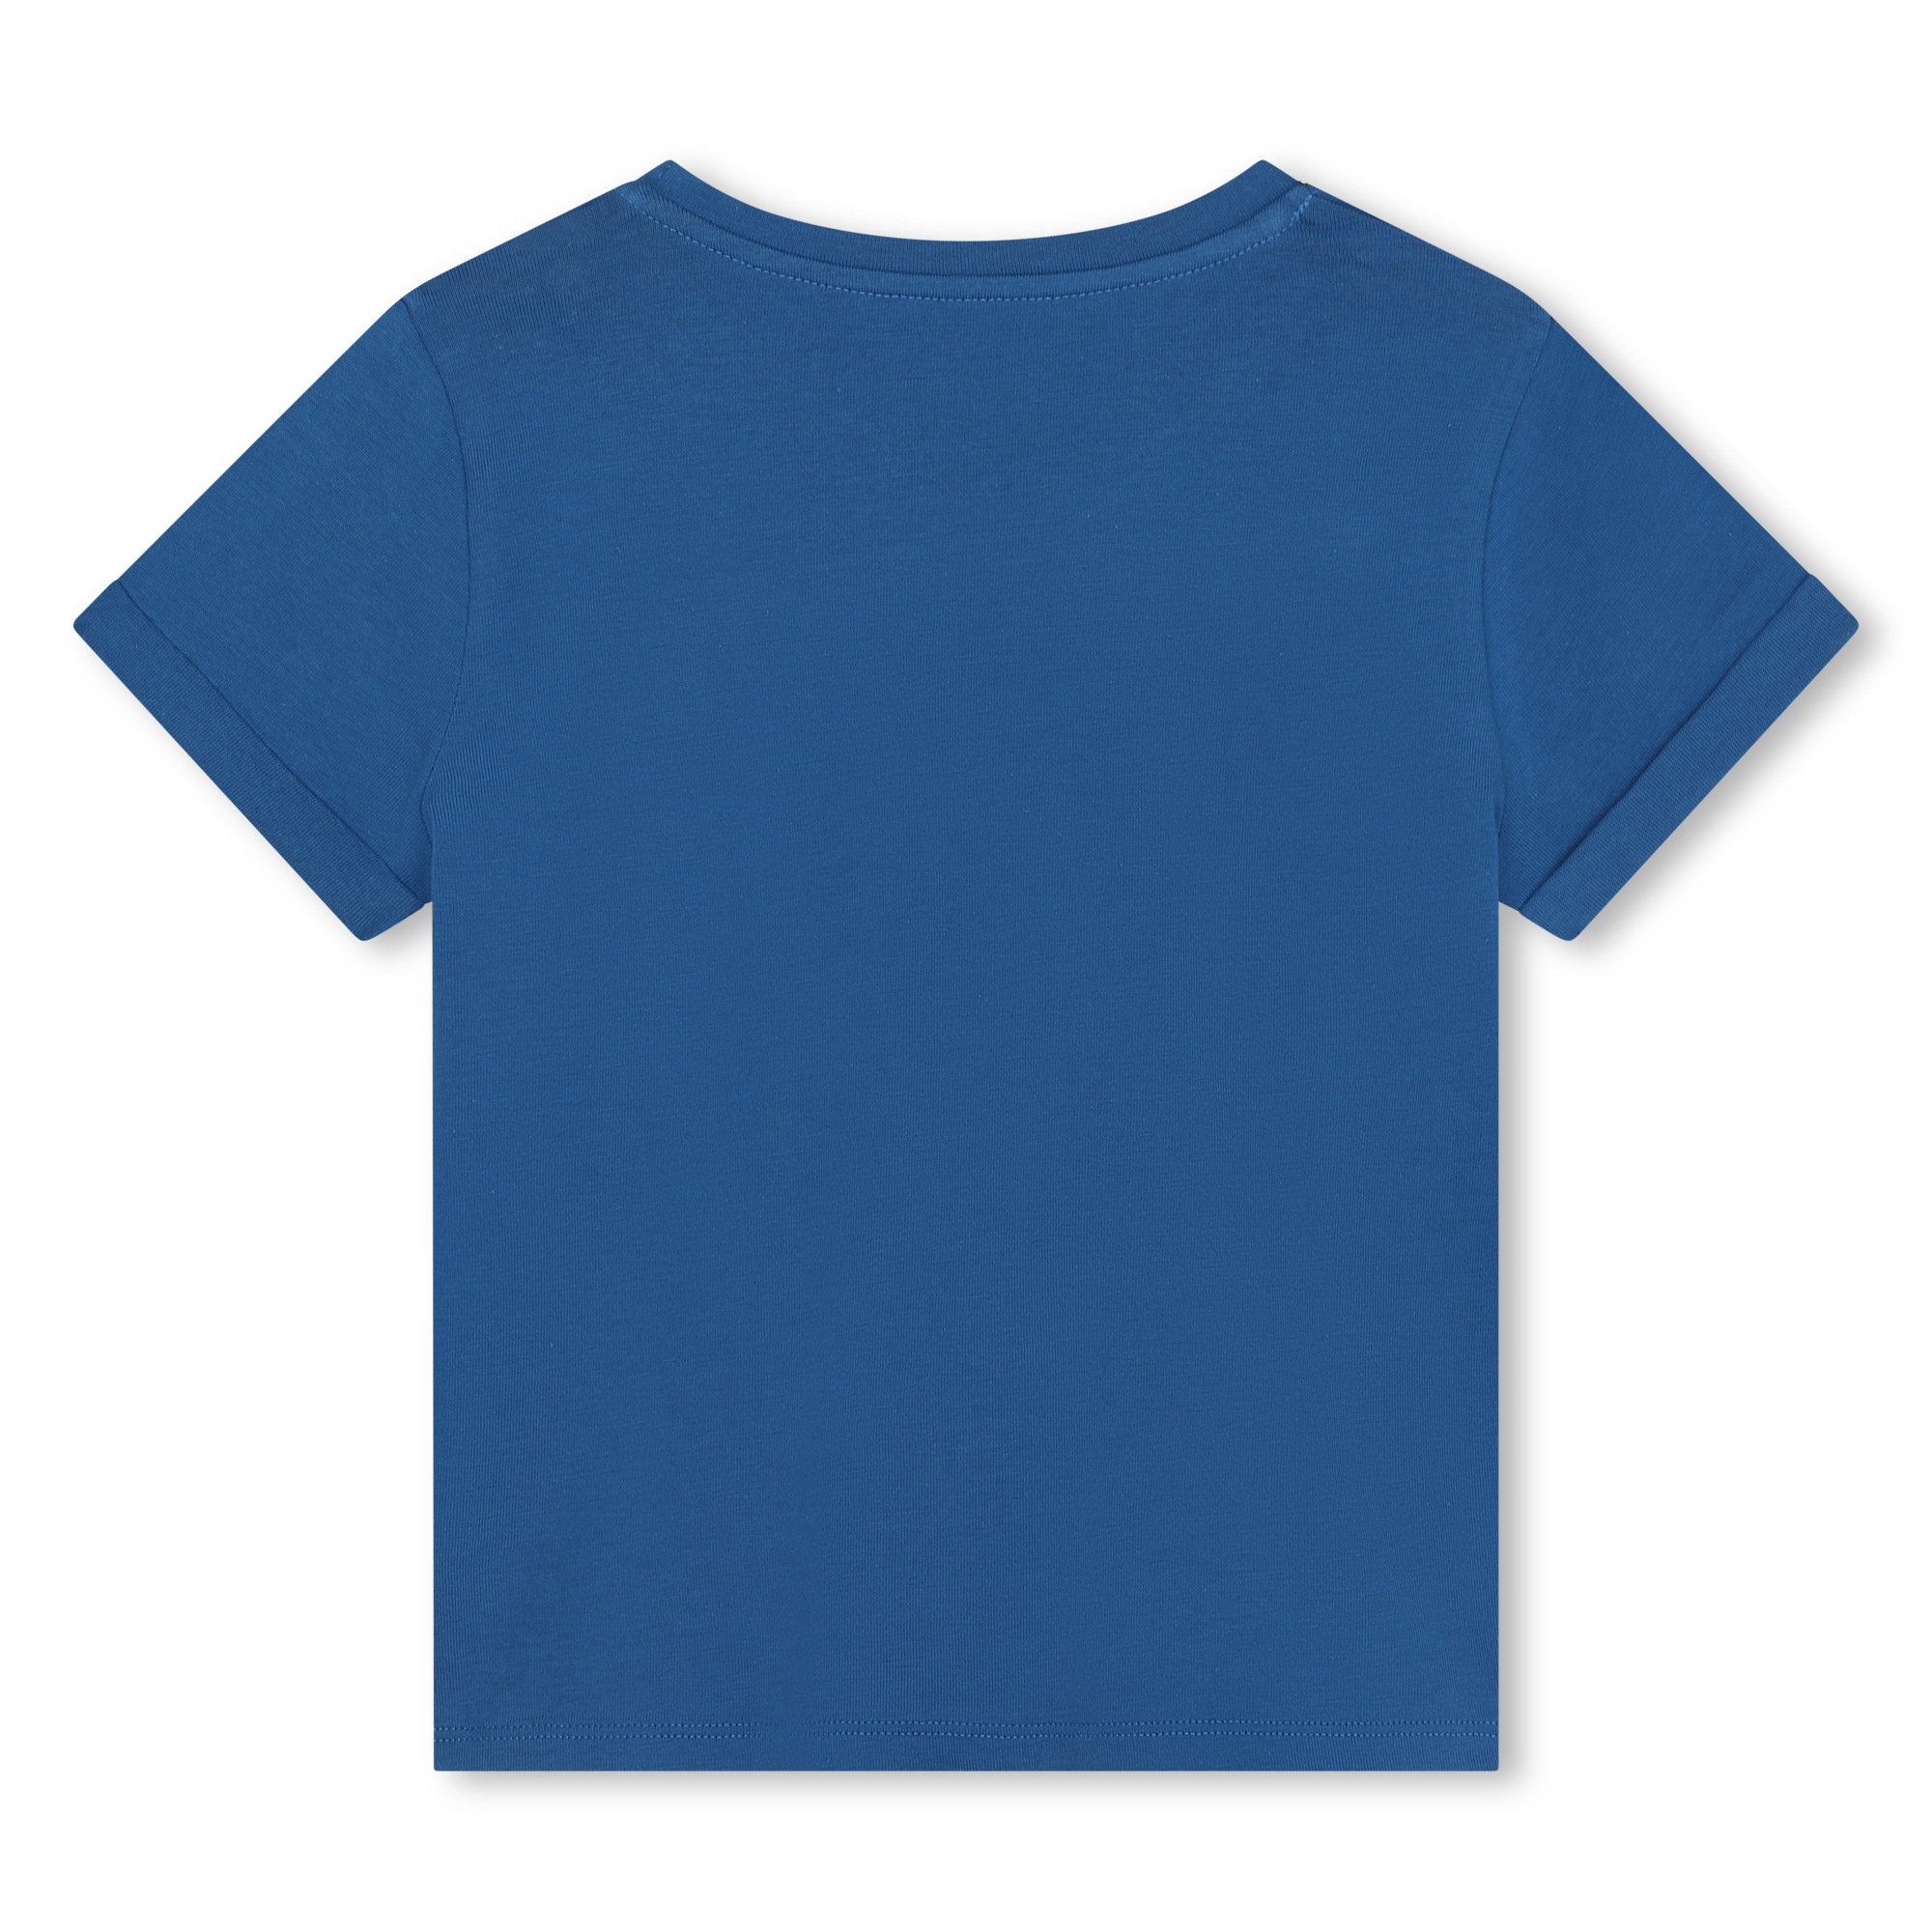 Kurzärmliges Baumwoll-T-Shirt MICHAEL KORS Für MÄDCHEN